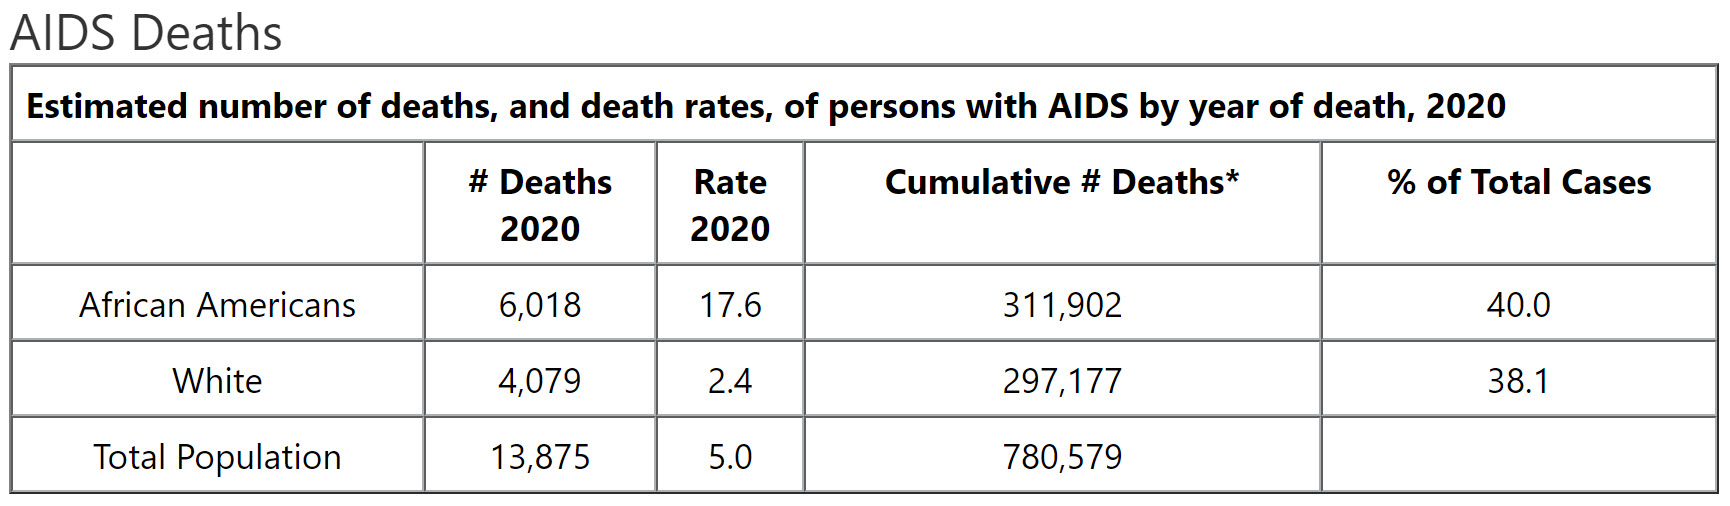 AIDS Deaths, 2020